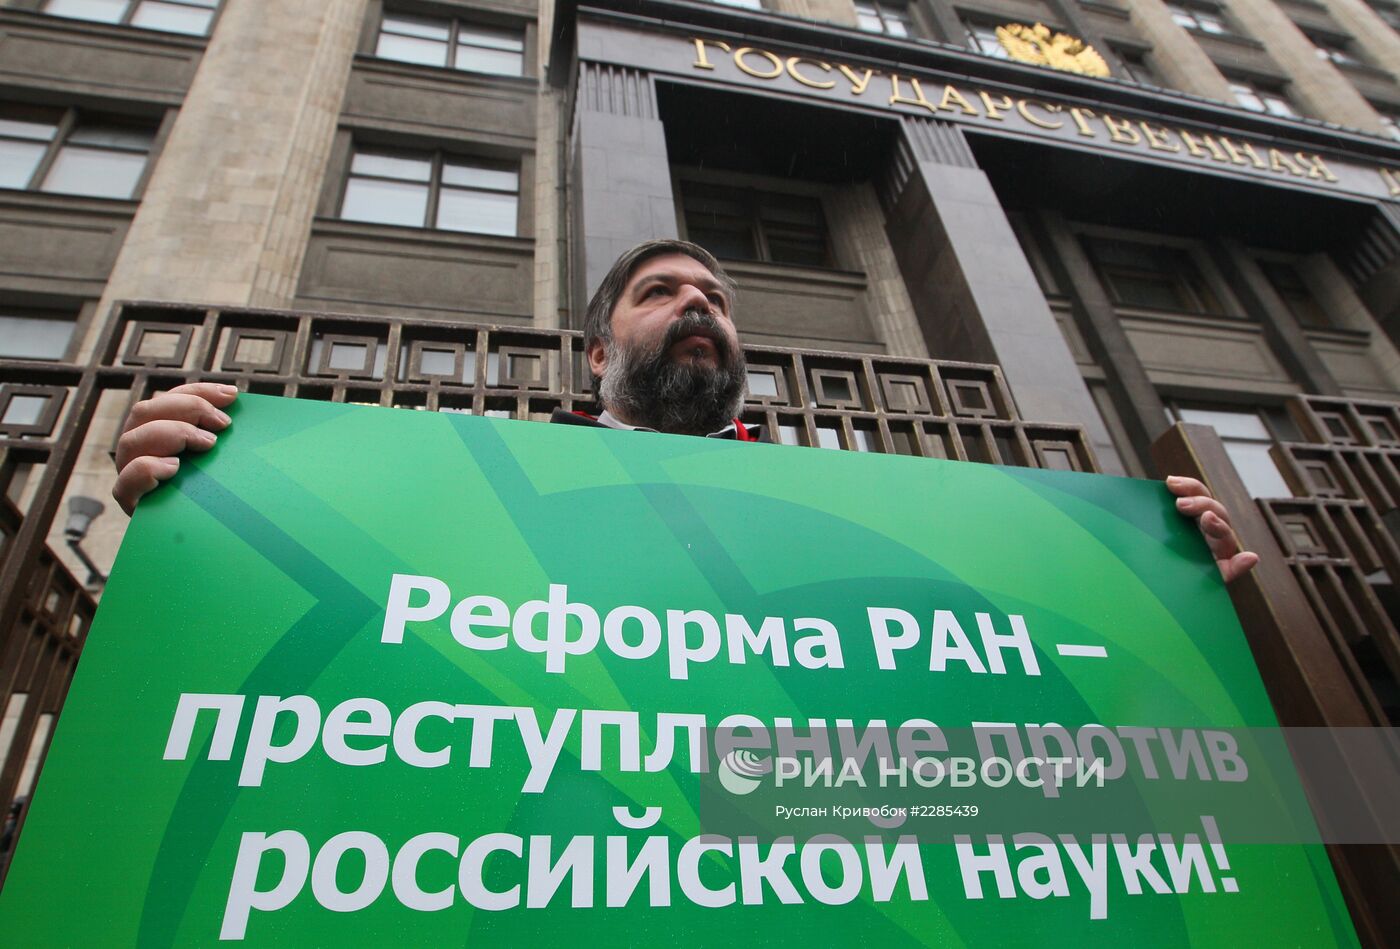 Митинг против реформы РАН у Госдумы РФ